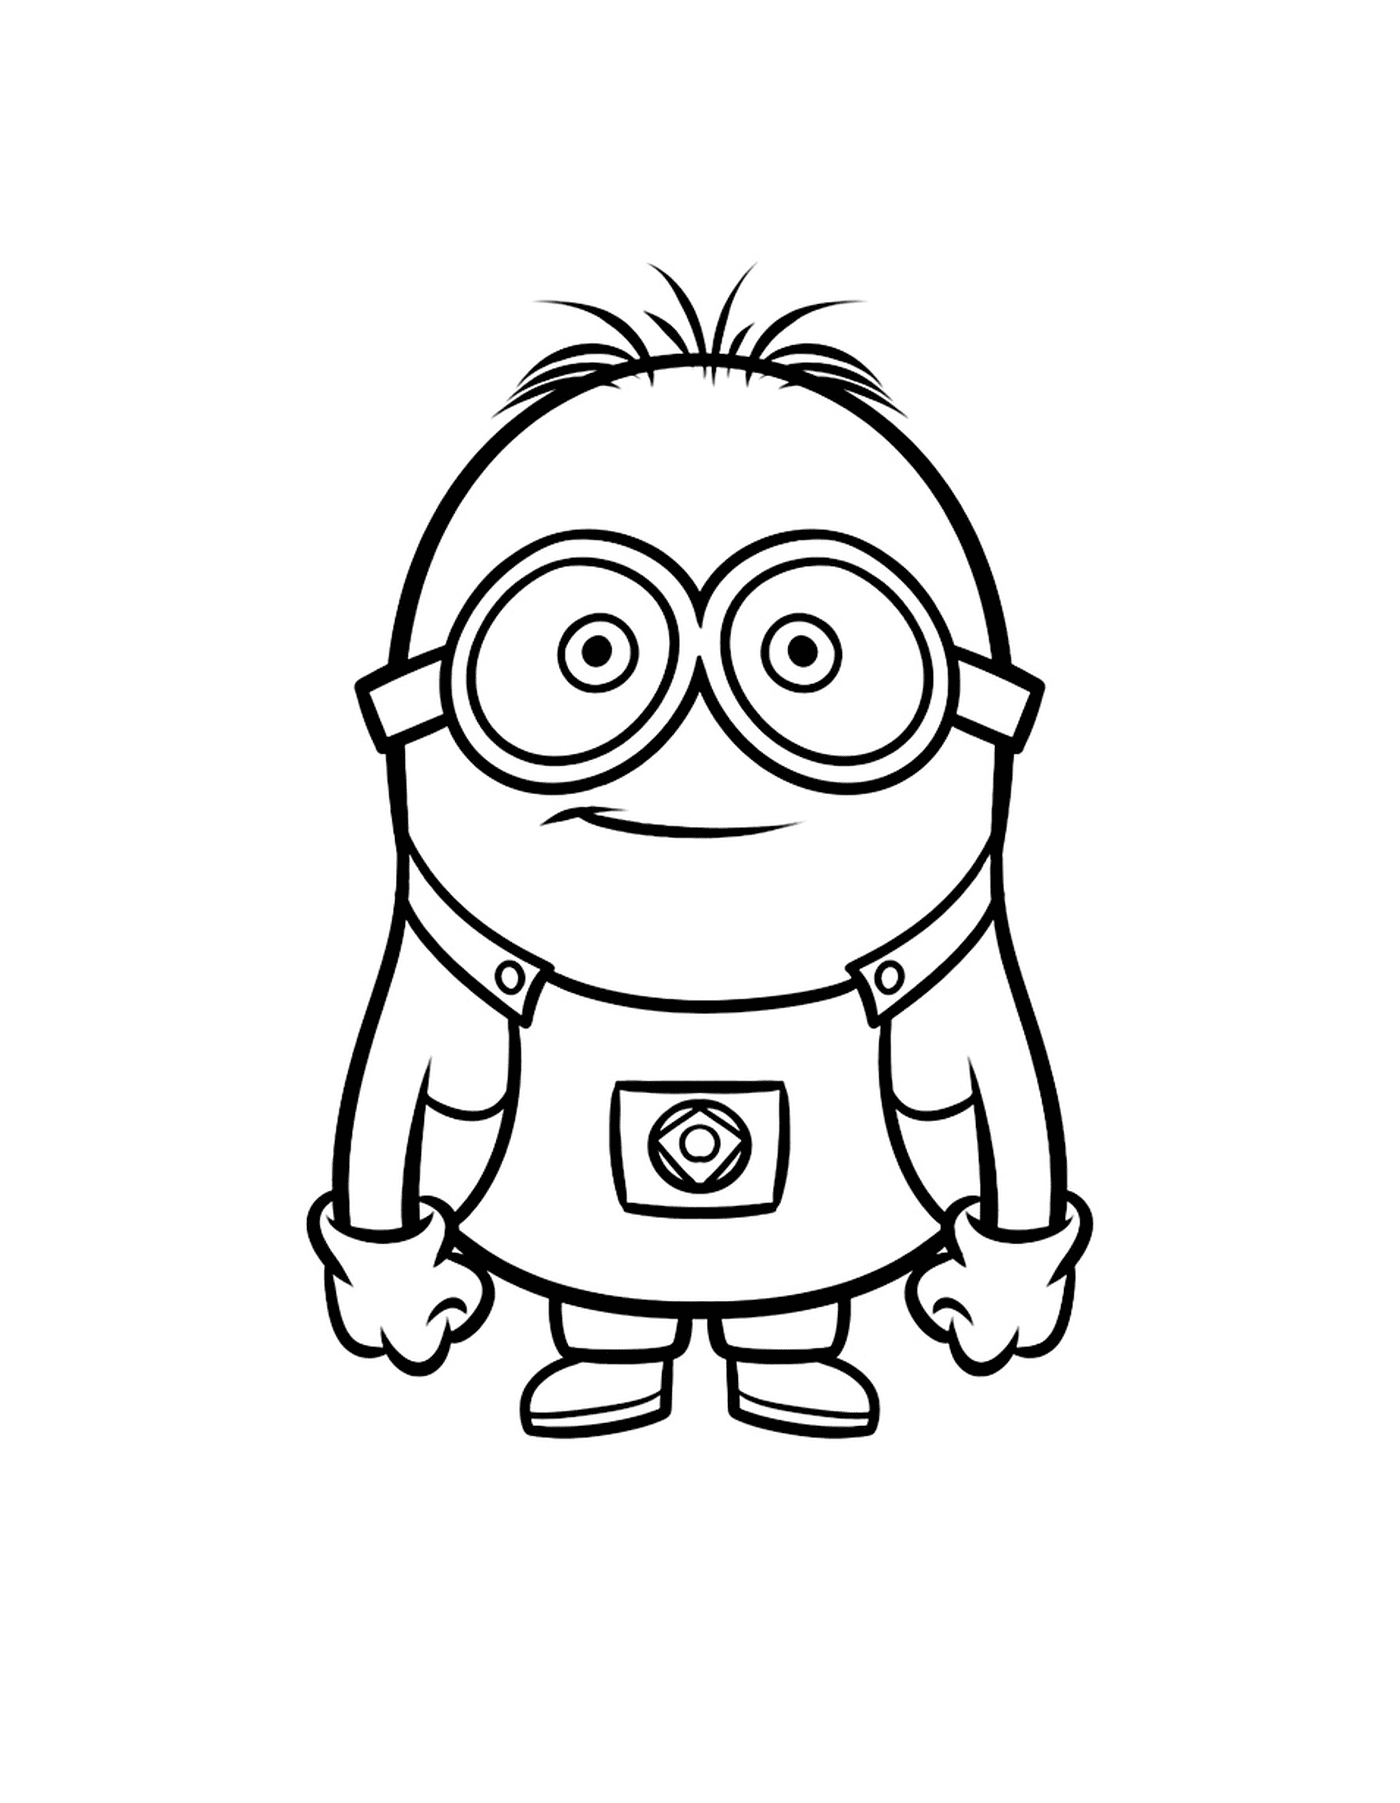  Junge Minion mit Brille, animierter Charakter 